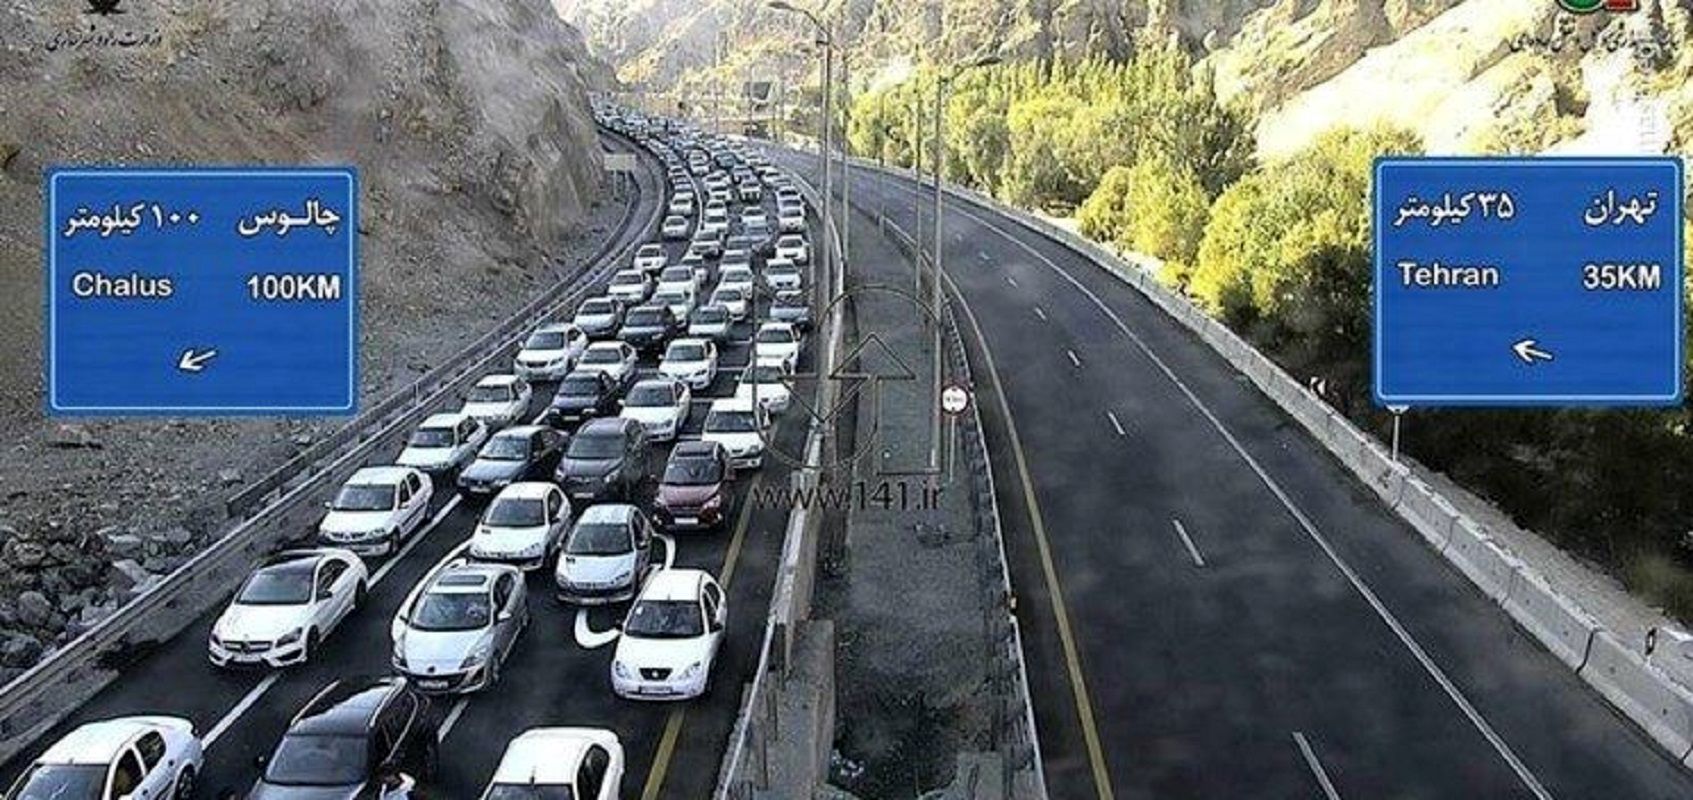 ترافیک در آزادراه تهران - شمال سنگین شد / اعمال محدودیت ترافیکی جدید